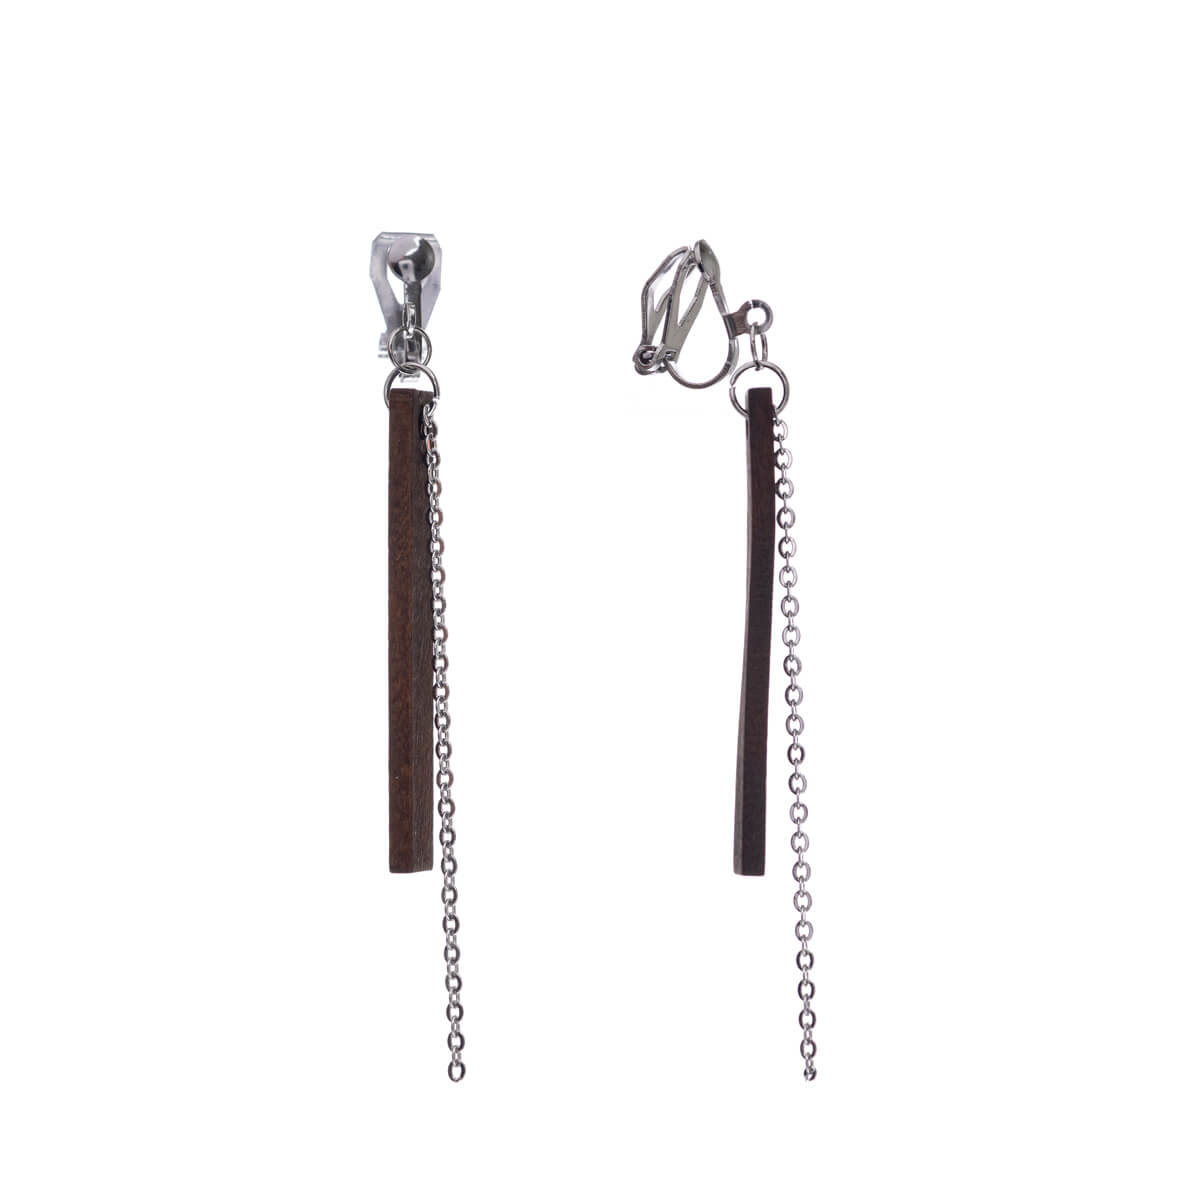 Wooden pillar clip earrings - Made in Finland (steel 316L)